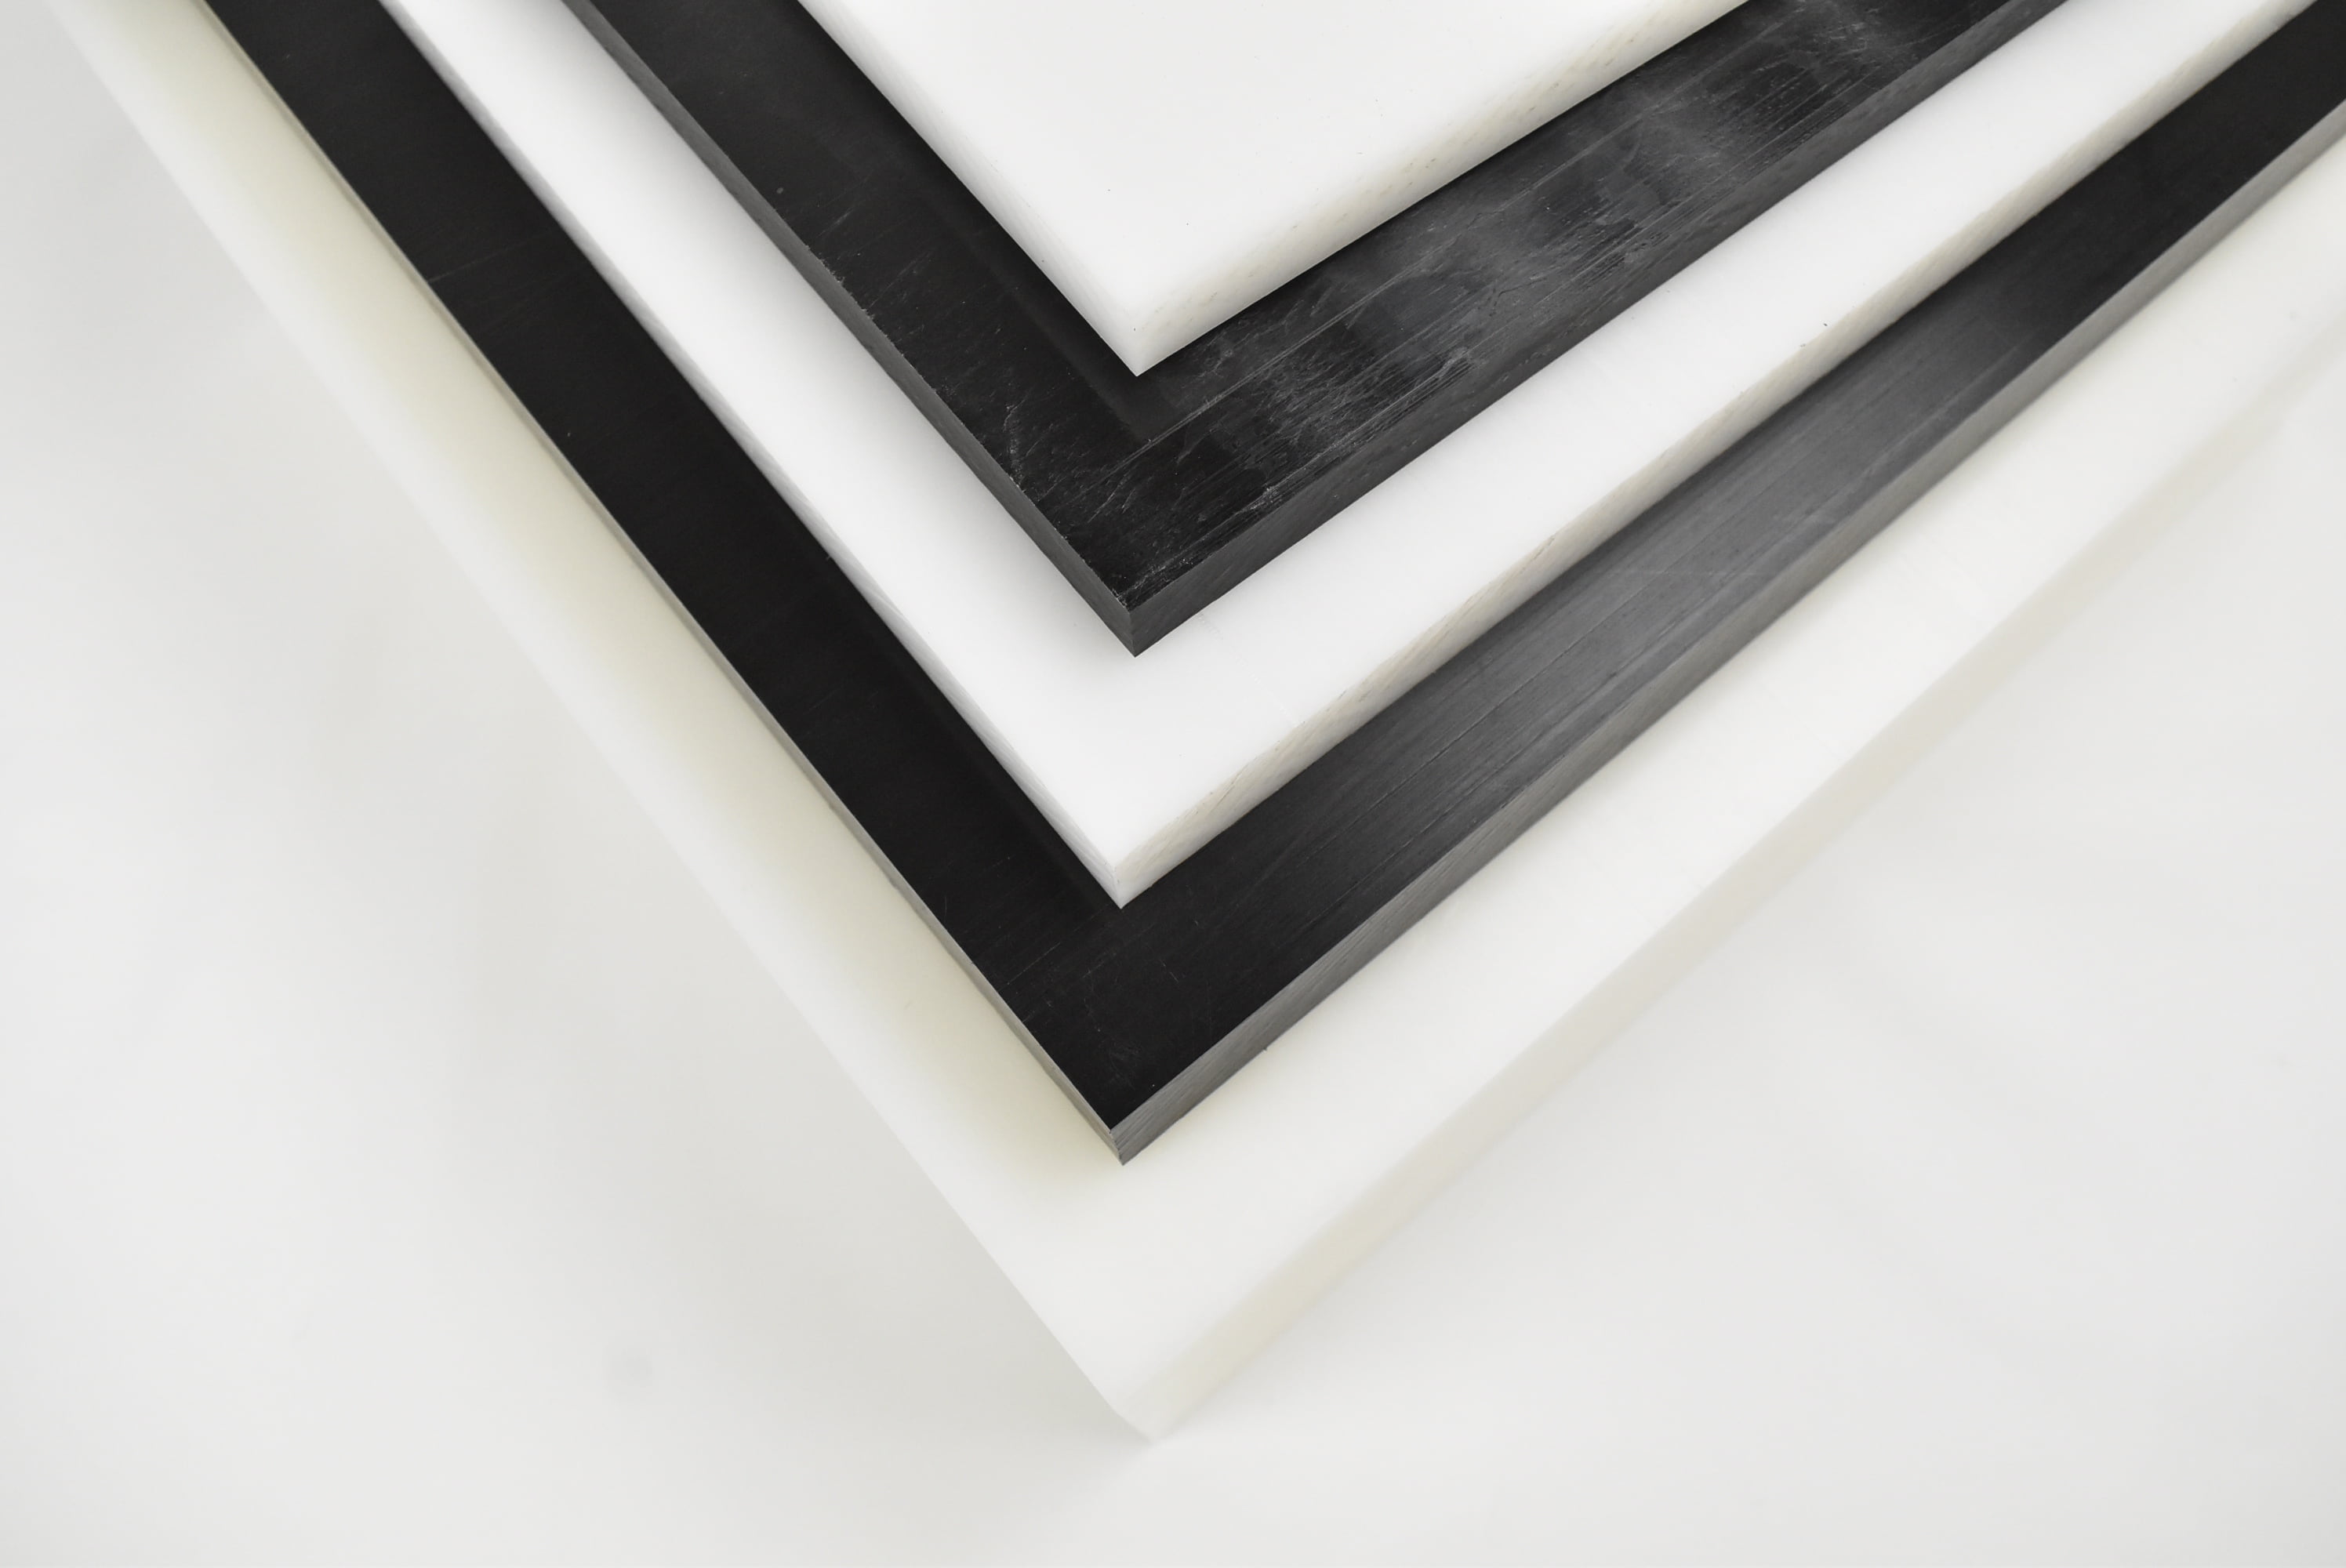 Black Color Acetal Plastic Sheet 3/4" x 12" x 12" Delrin